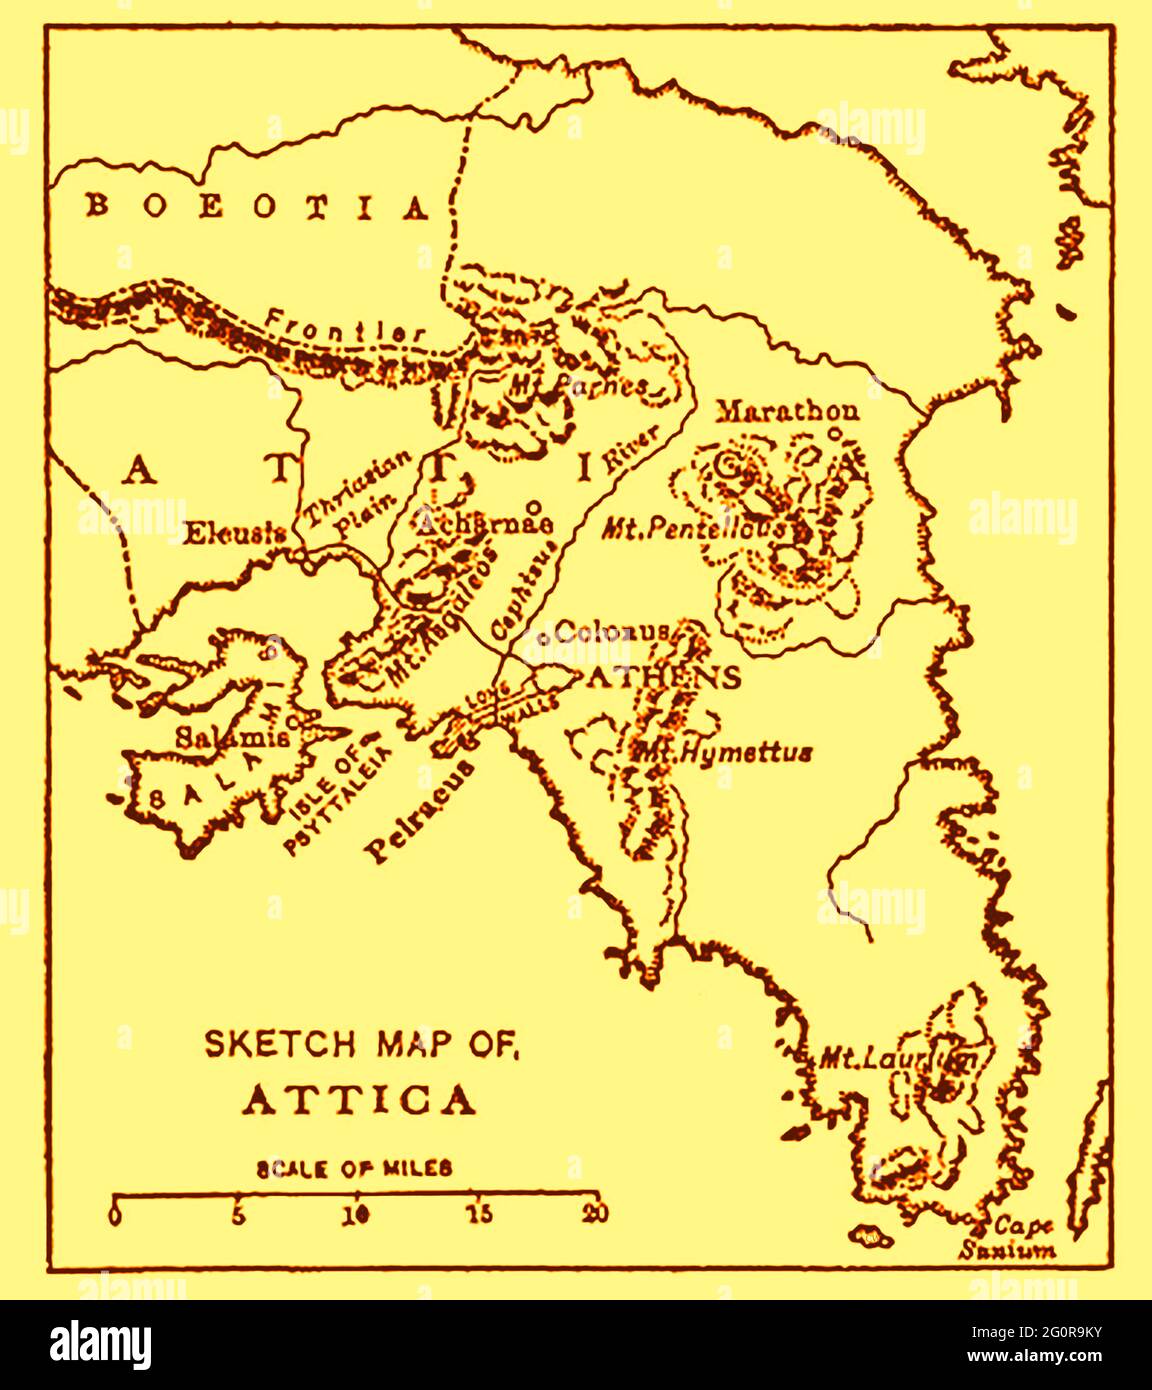 Una vecchia mappa di Attica (nota anche come atica, Αττική, Attikḗ, Attikī́ e la penisola Attica) come nel 1914 con distanza in miglia inglesi Foto Stock